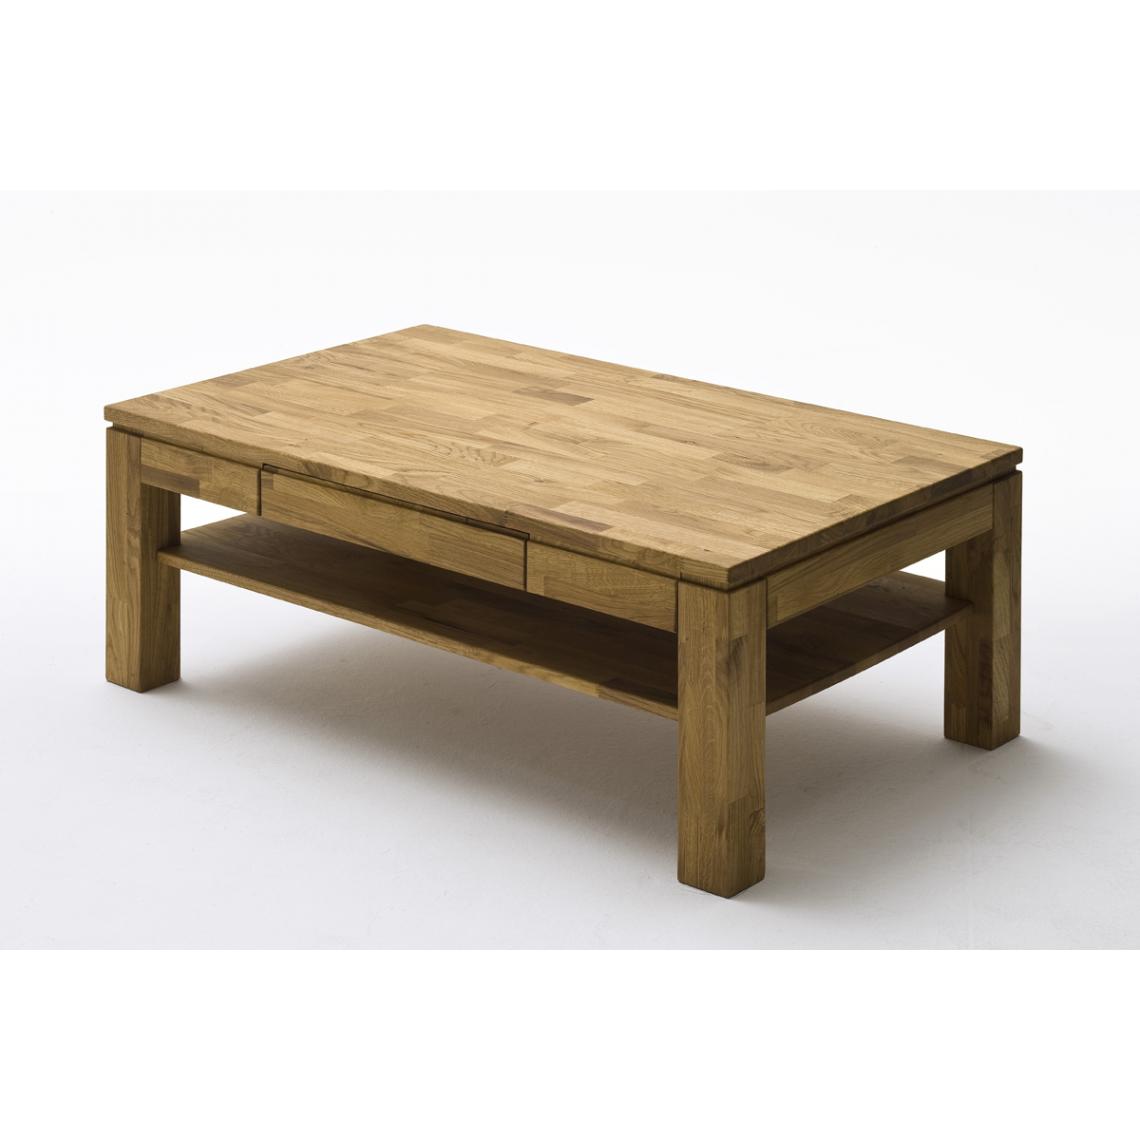 Pegane - Table basse en chêne noueux massif huilé - L115 x H45 x P70 cm - Tables basses